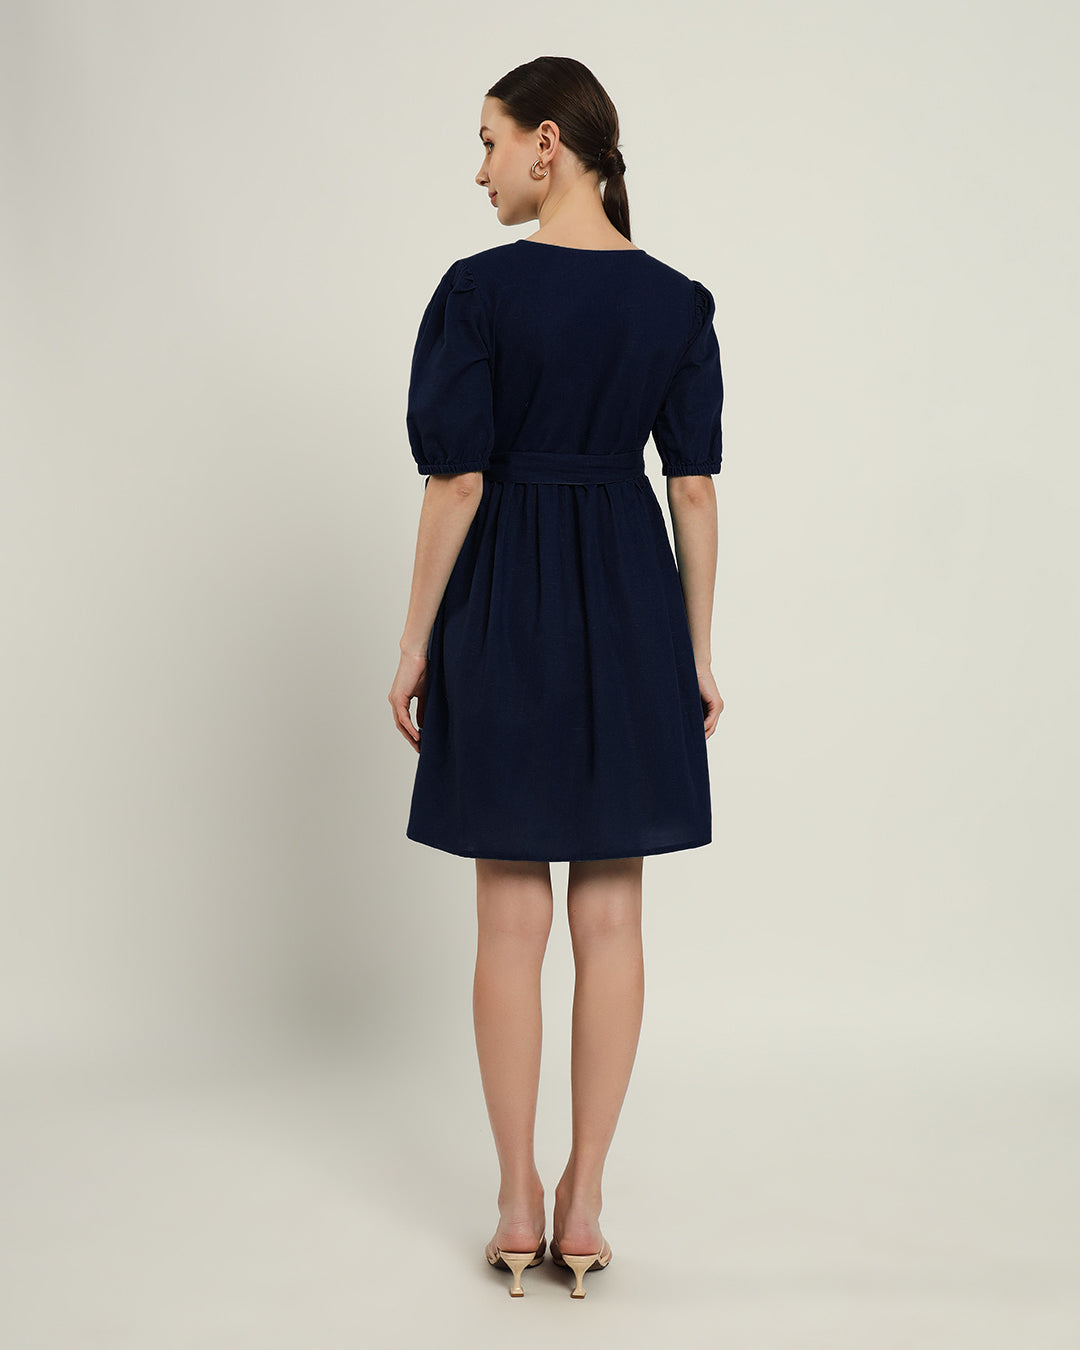 The Inzai Daisy Midnight Blue Linen Dress